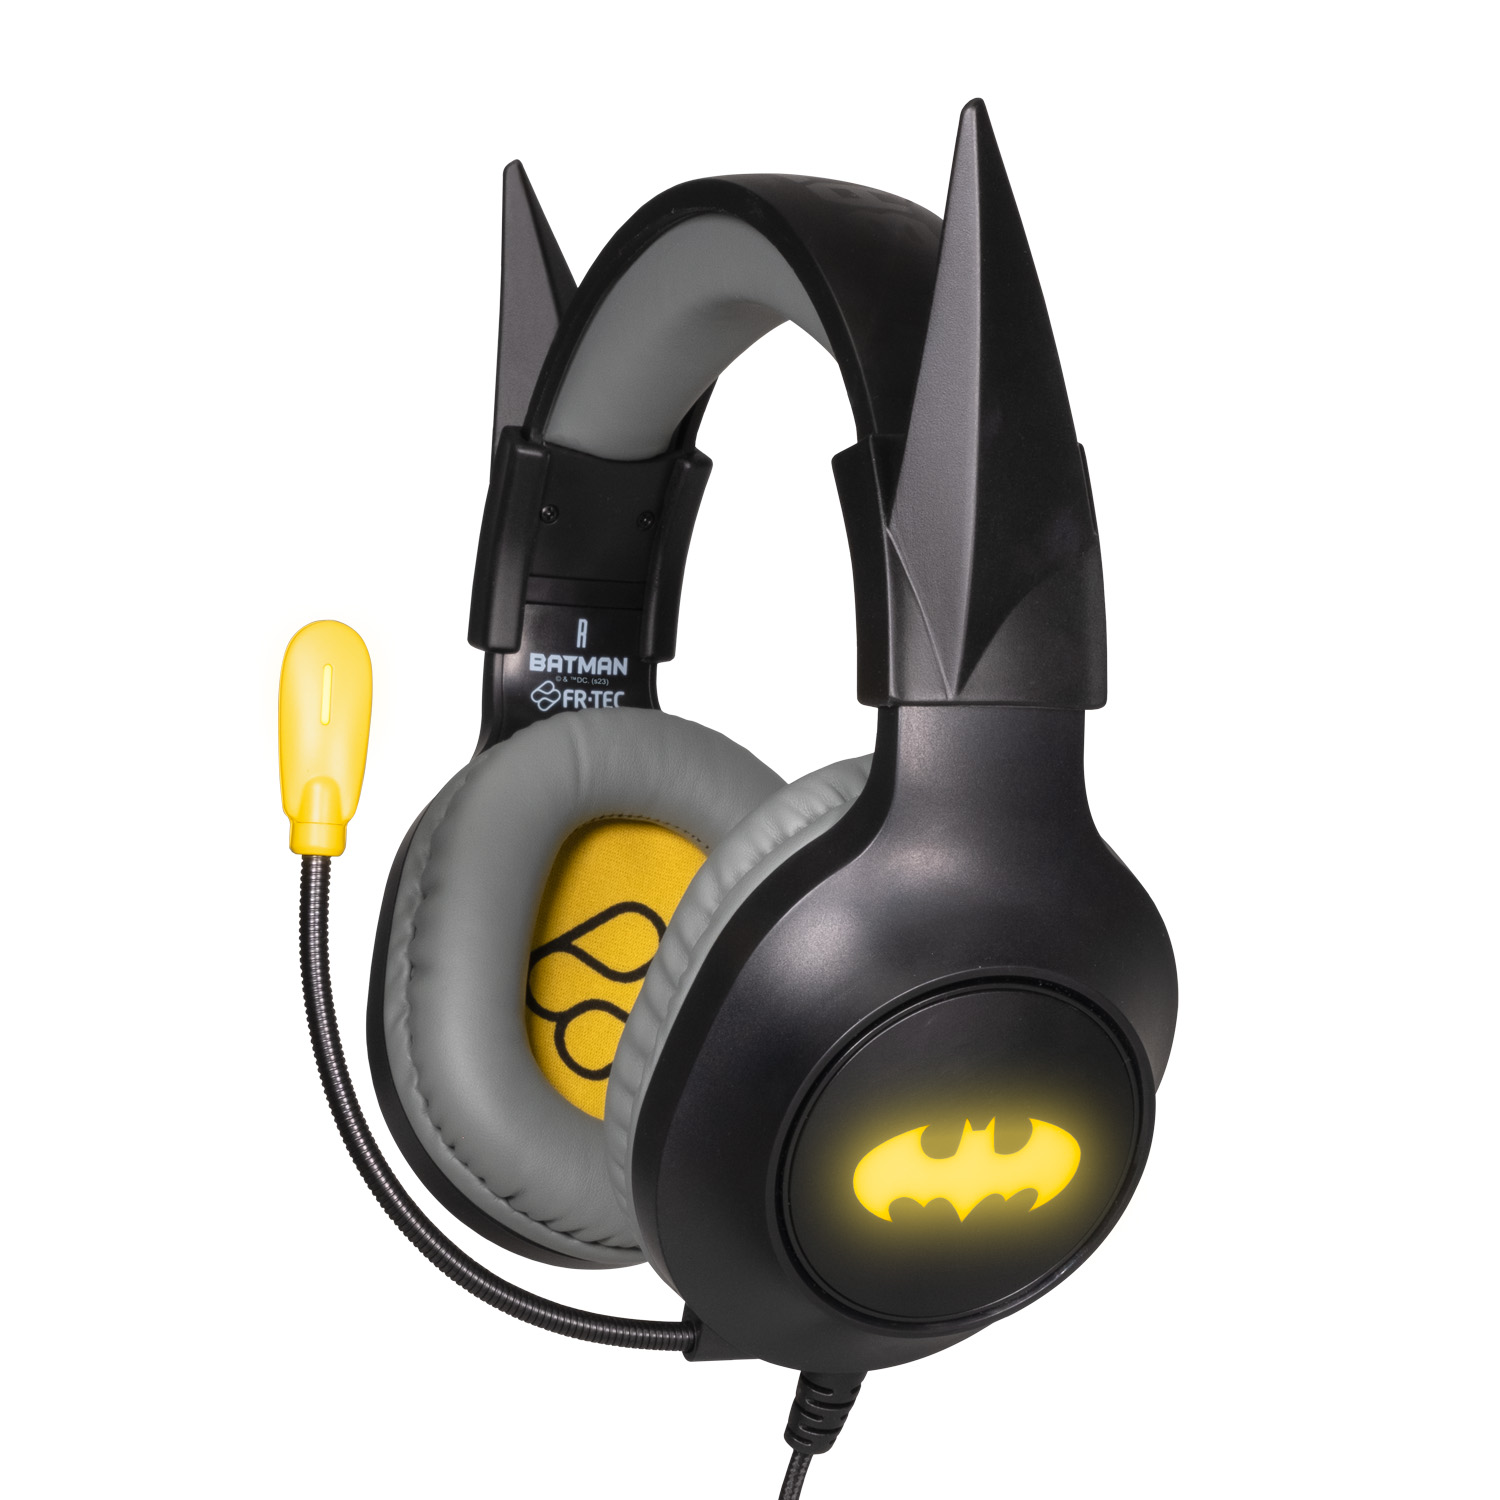 FR-TEC Batman Casque de jeu avec microphone pliable – Bandeau réglable – Coussinets rembourrés – Éclairage LED jaune – Couleur grise